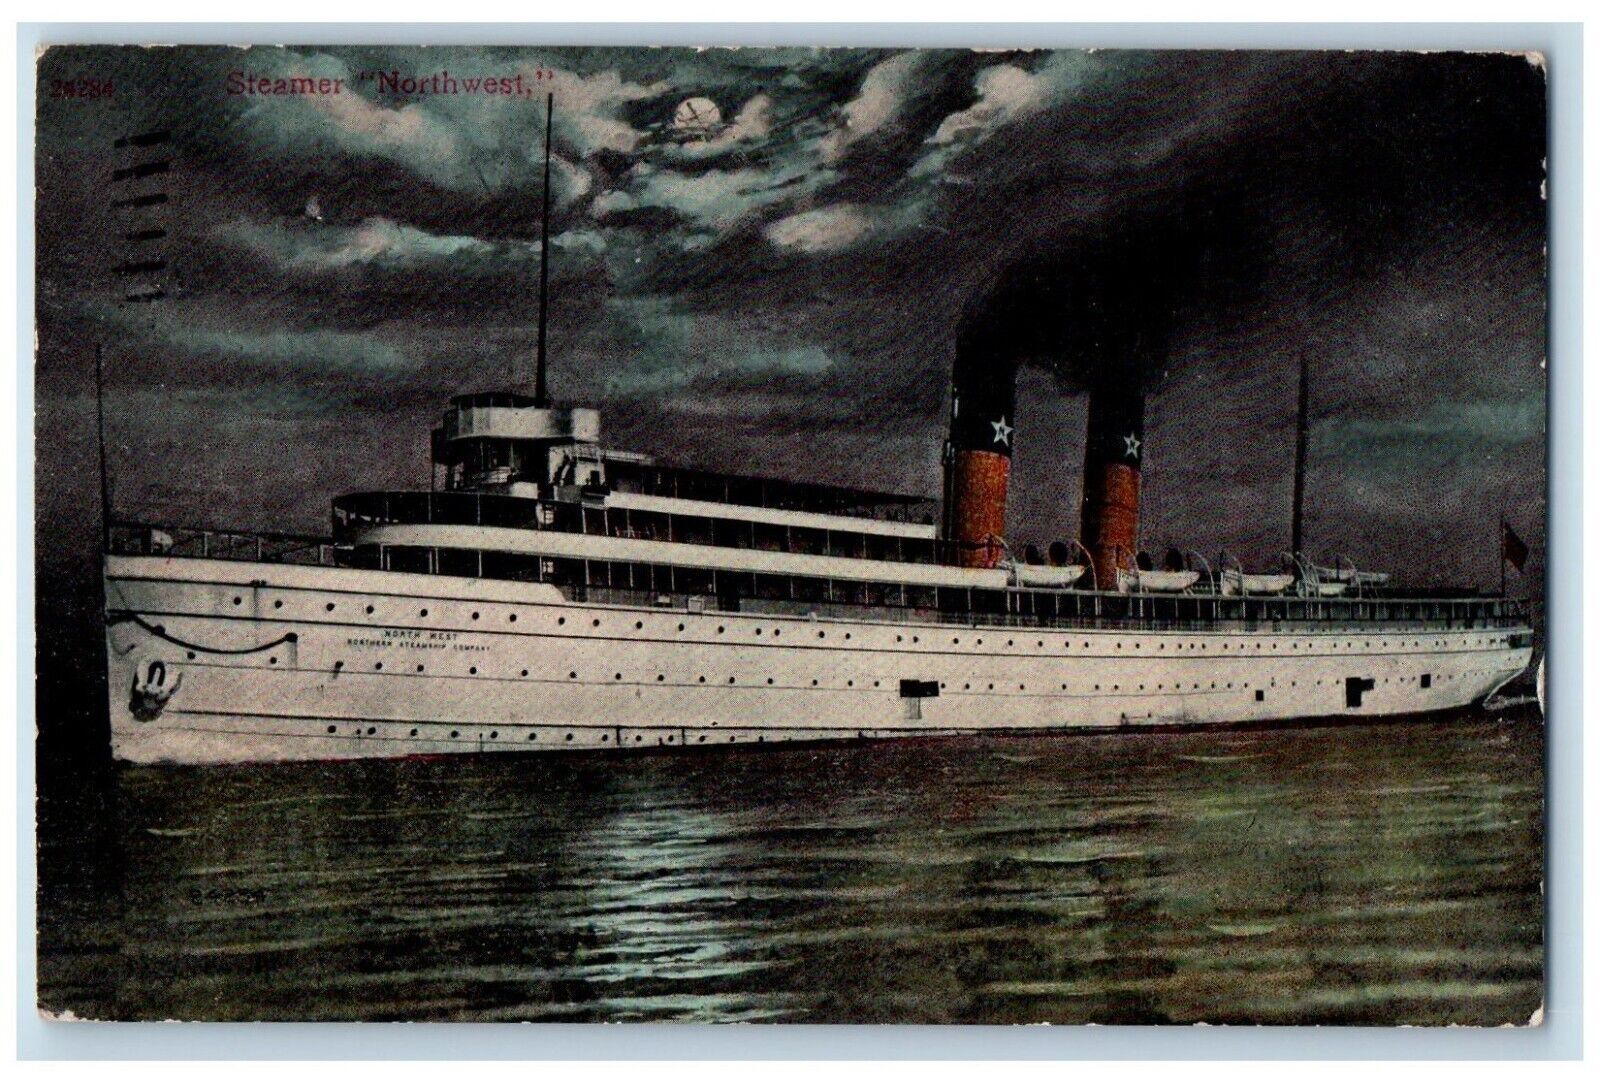 1911 Steamer Northwest Cruise Ship Detroit Michigan MI Vintage Antique Postcard